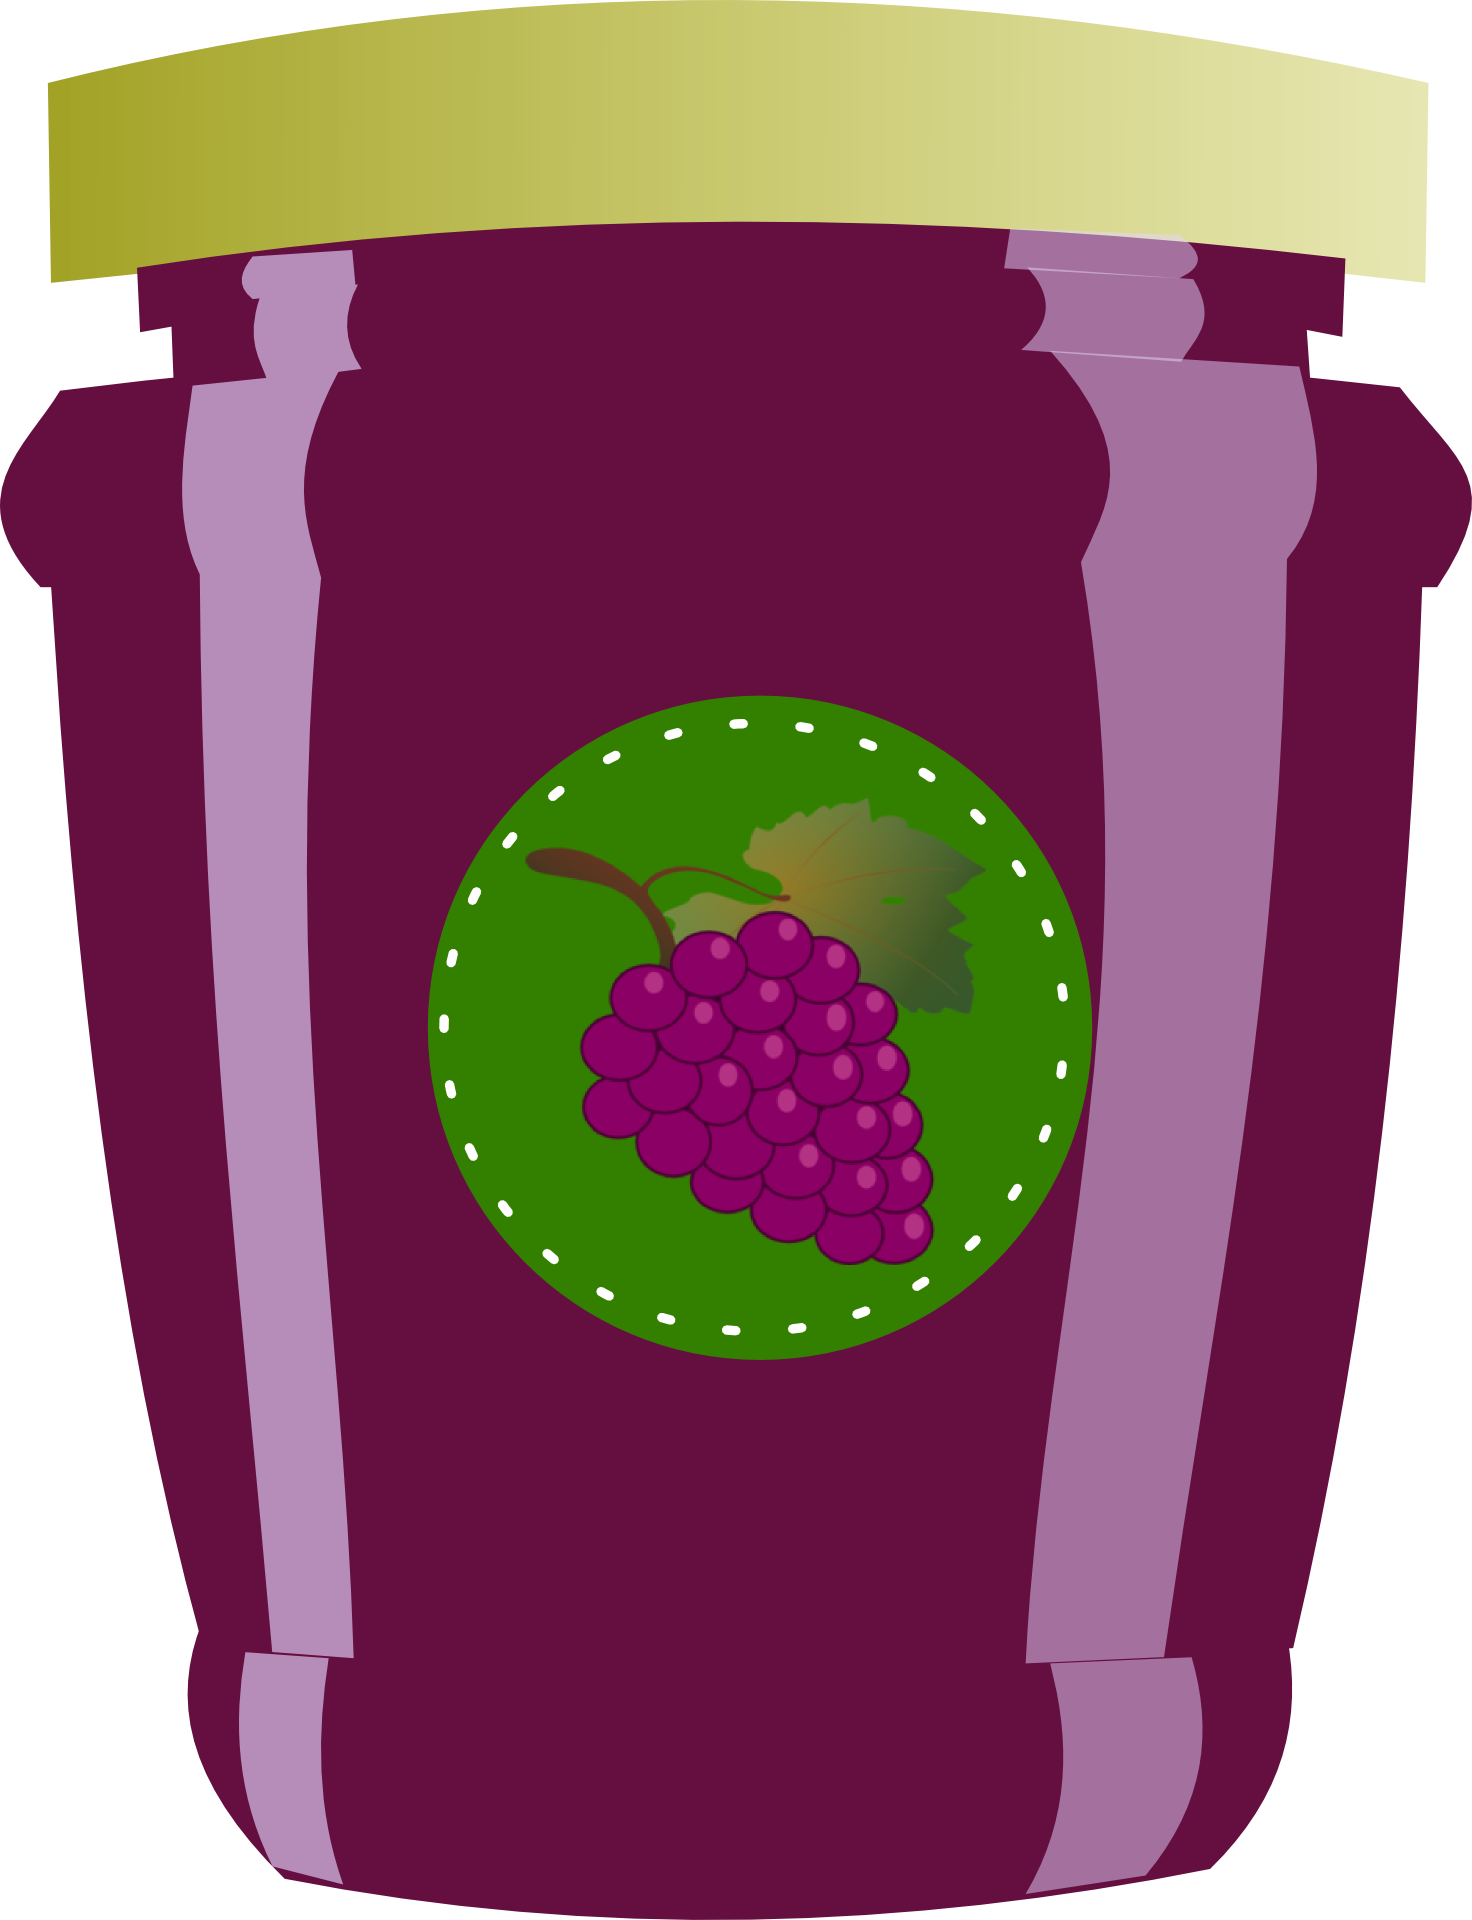 Juice grape juice